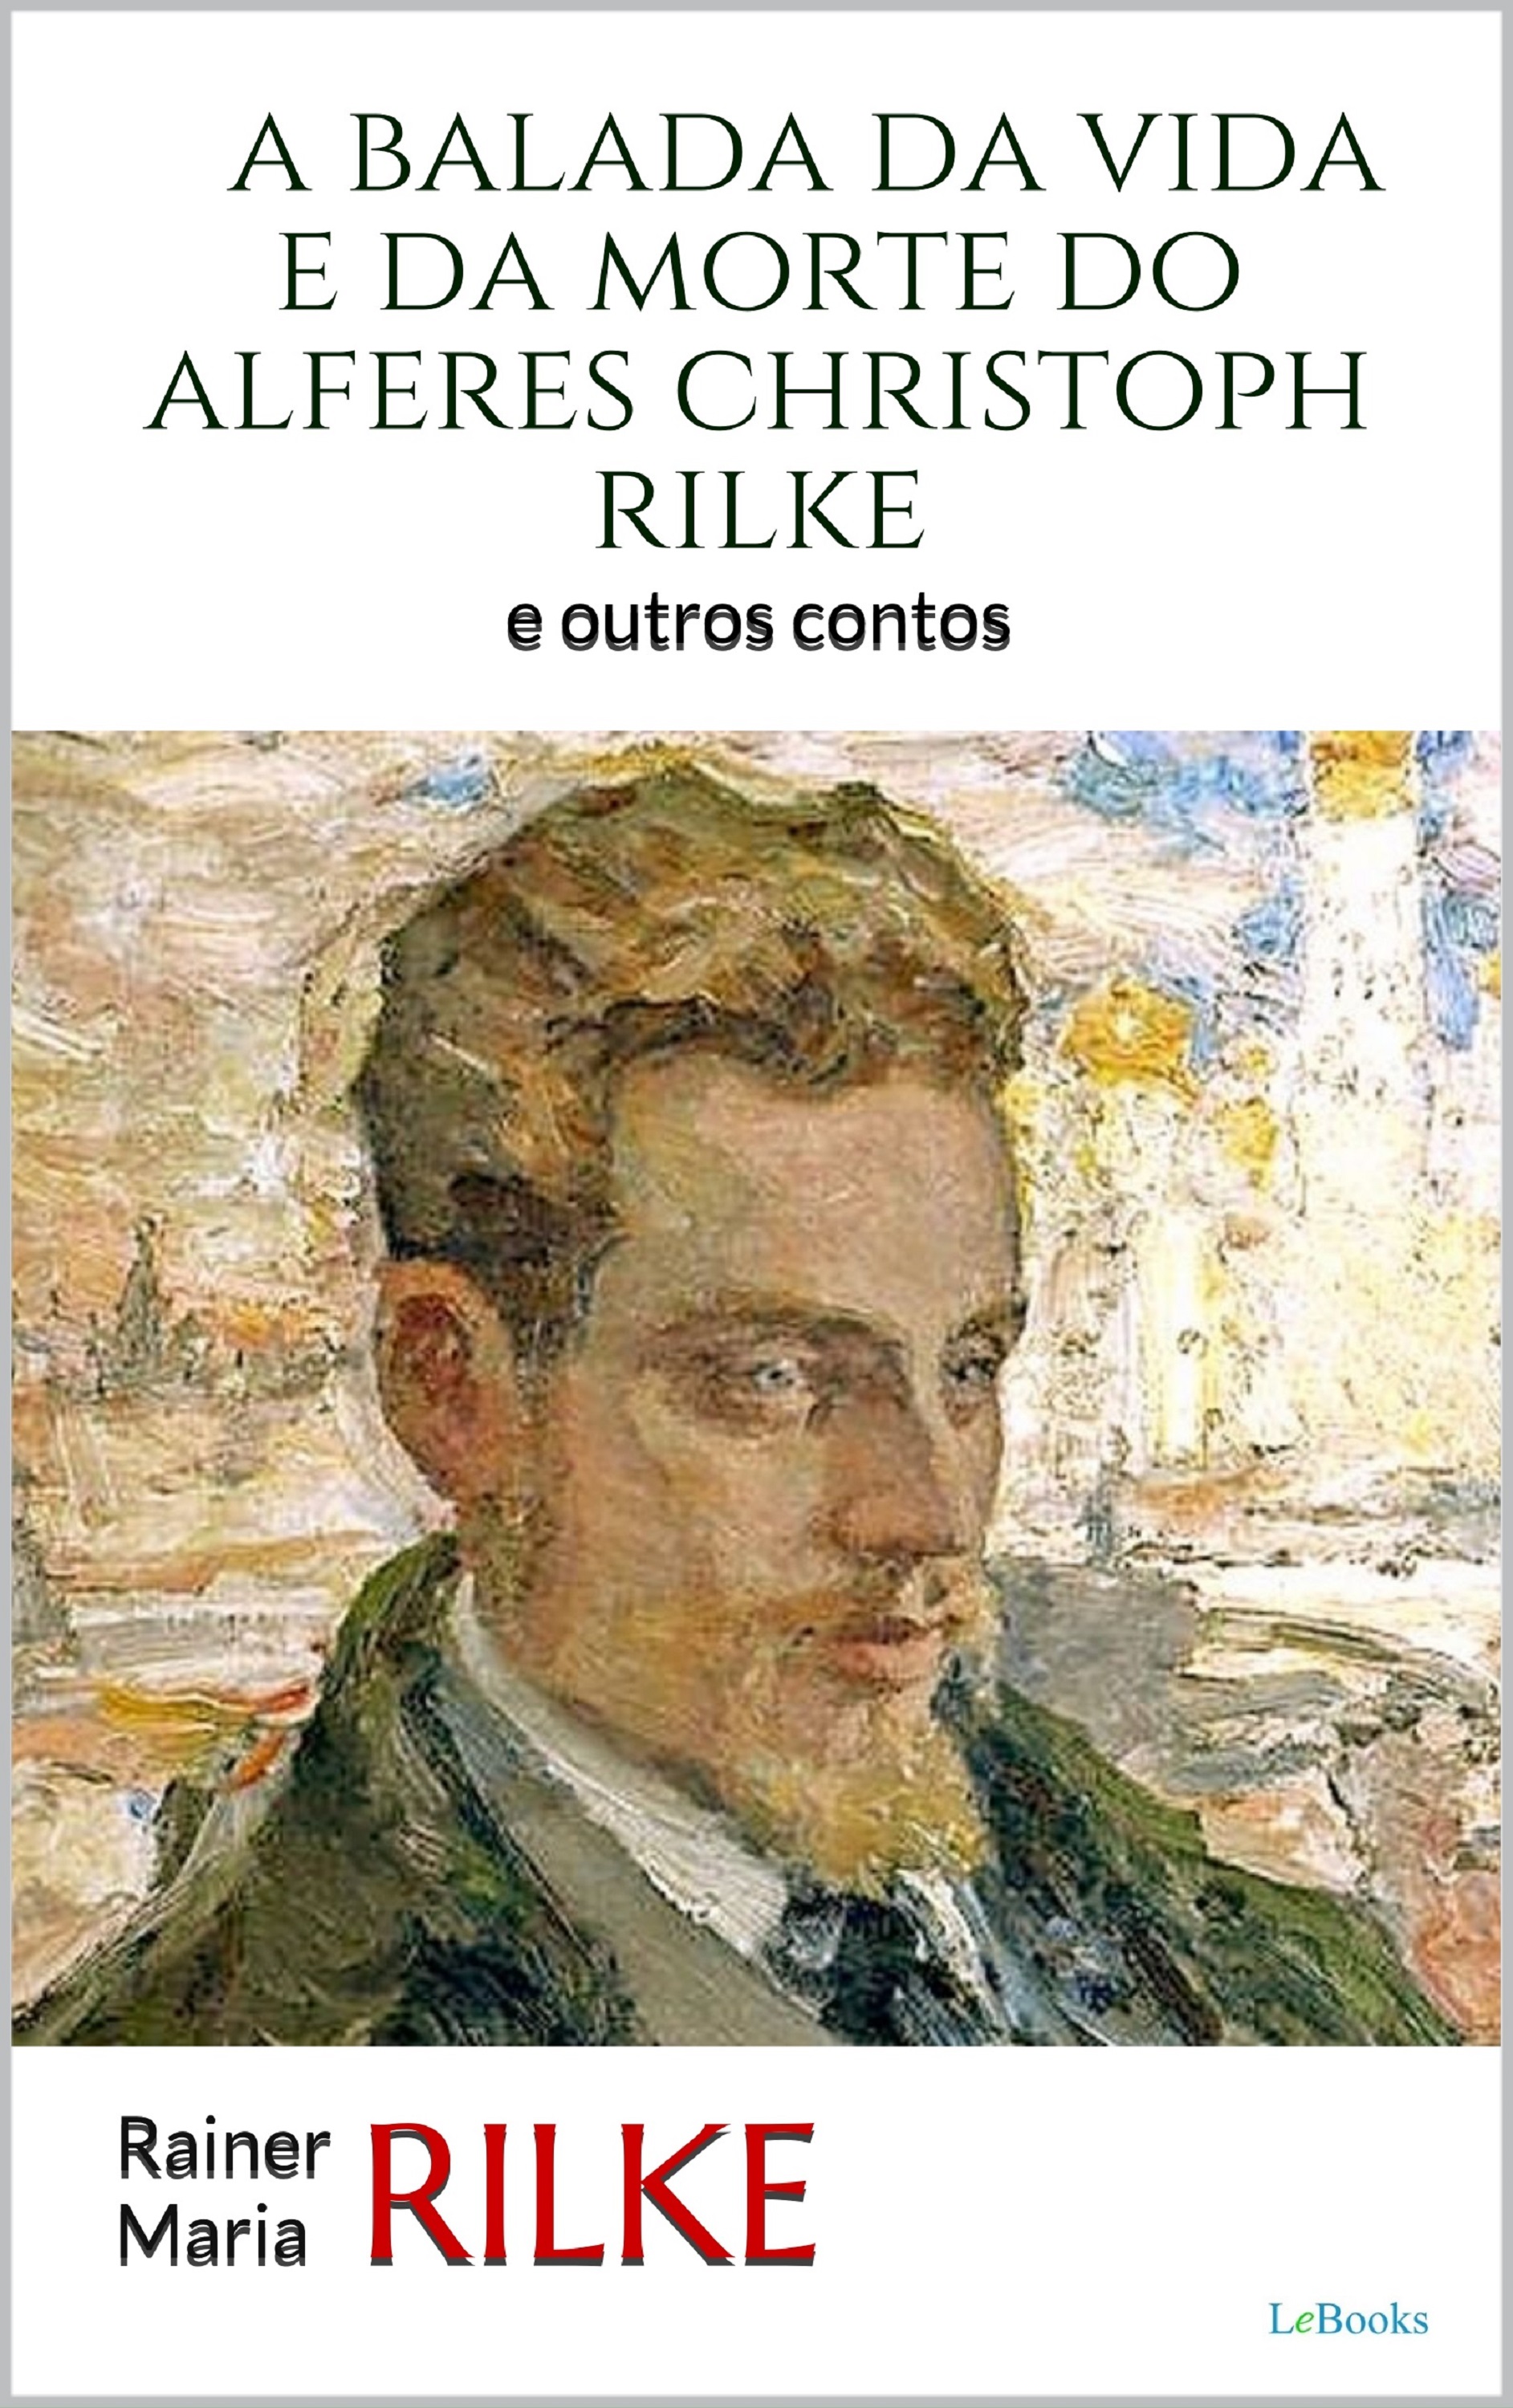 A Balada da Vida e da Morte do Alferes Christoph Rilke